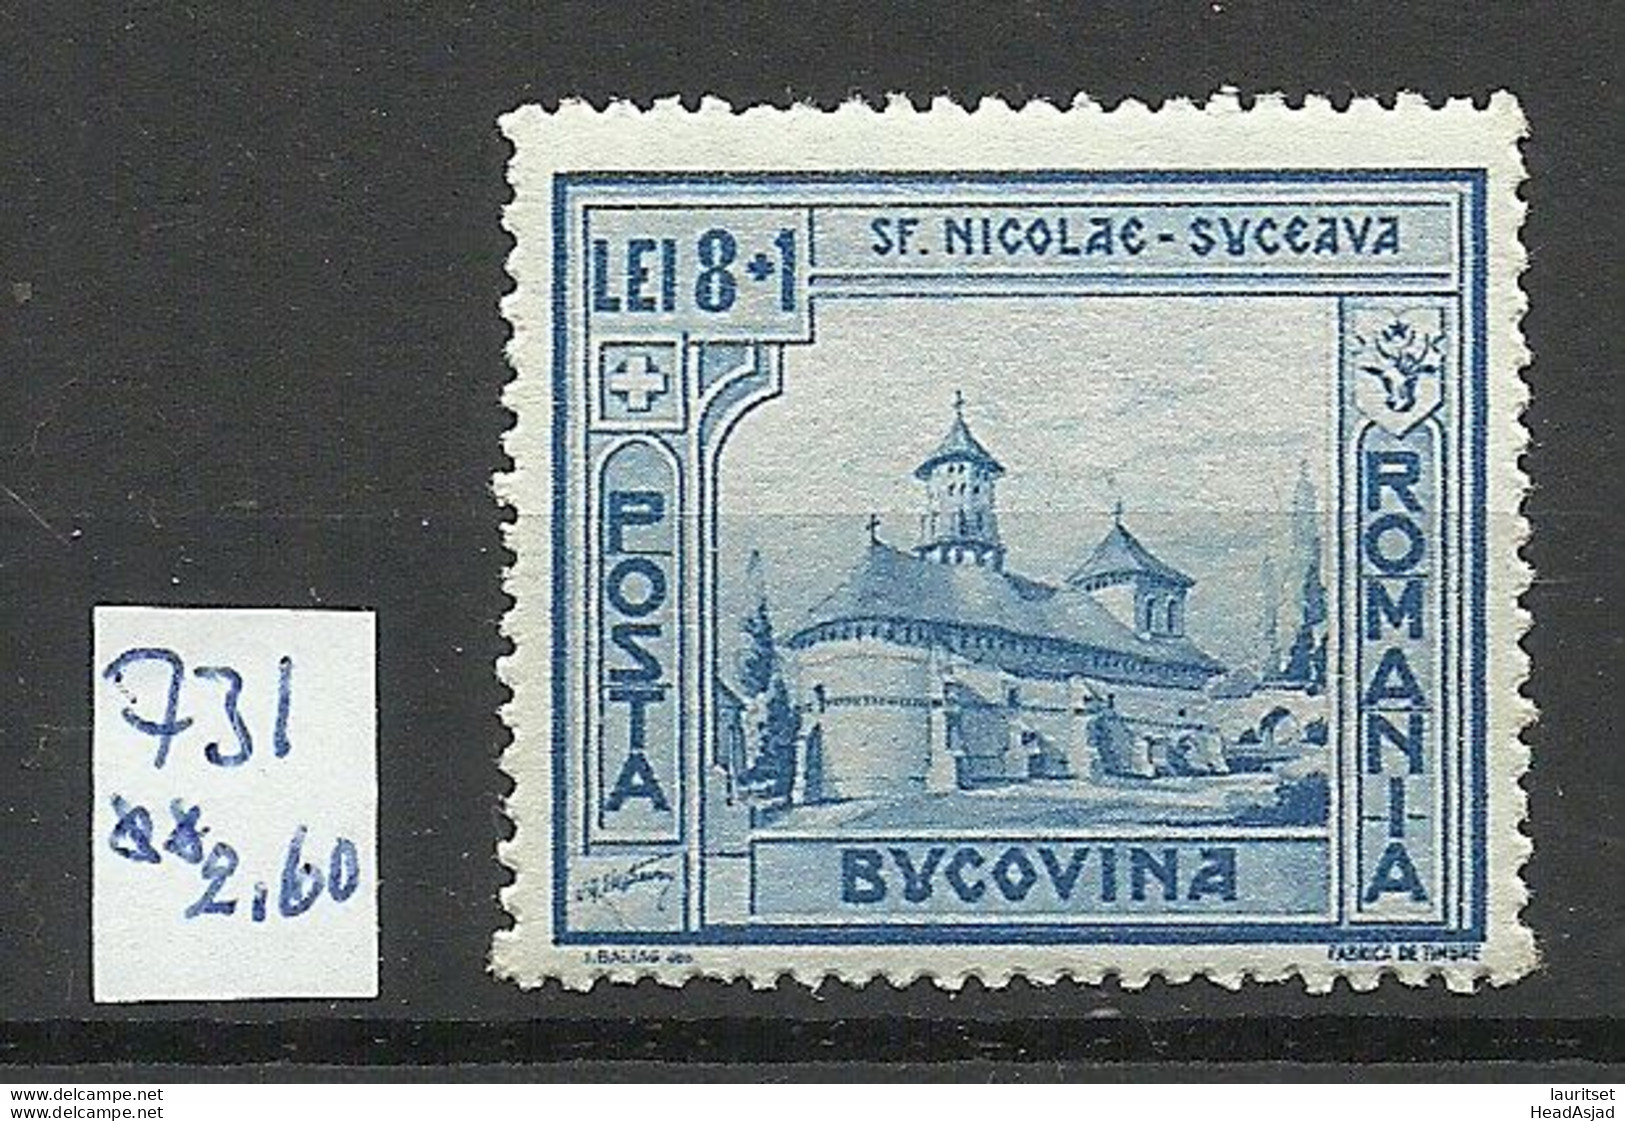 ROMANIA Rumänien 1941 Michel 738 Bucovina Arcitecture MNH - Unused Stamps